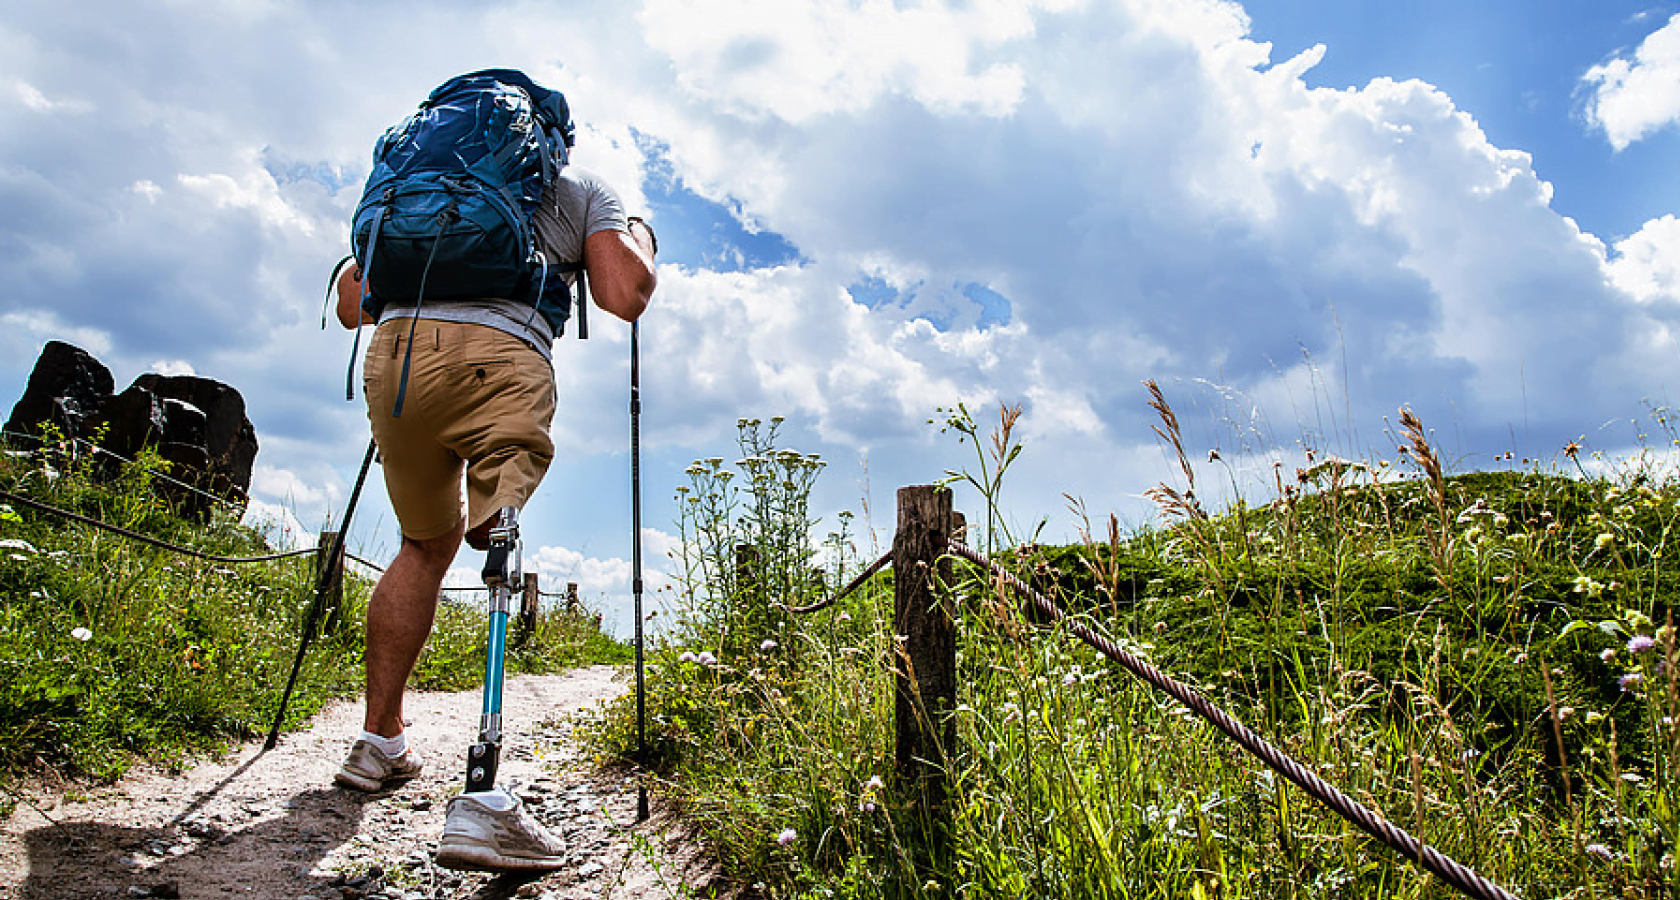 Mand med benprotese i naturen - Shutterstock